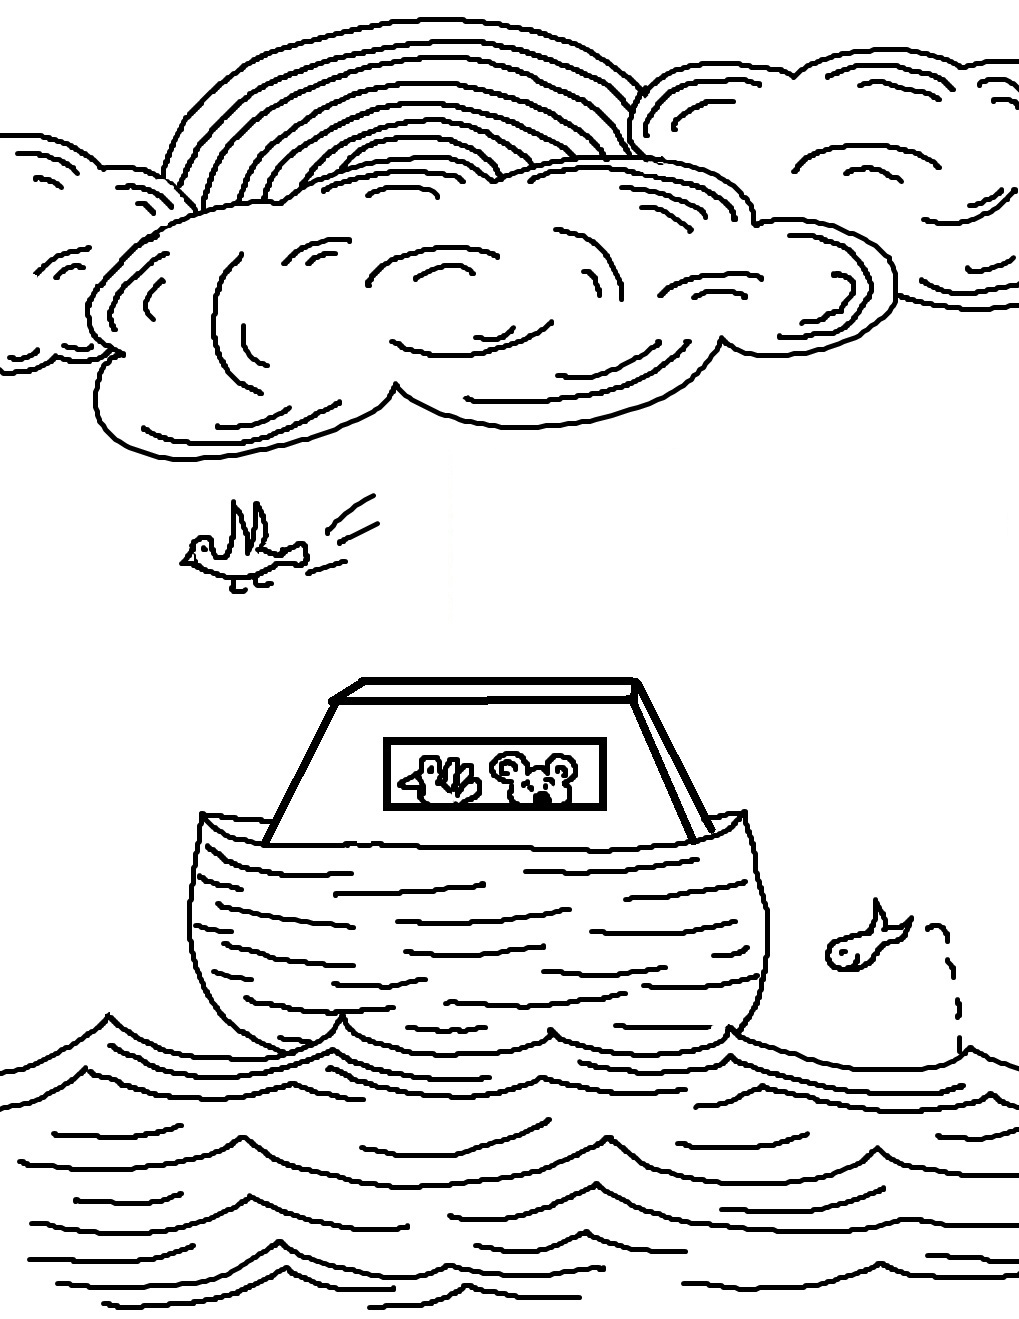 Ной рисунок карандашом